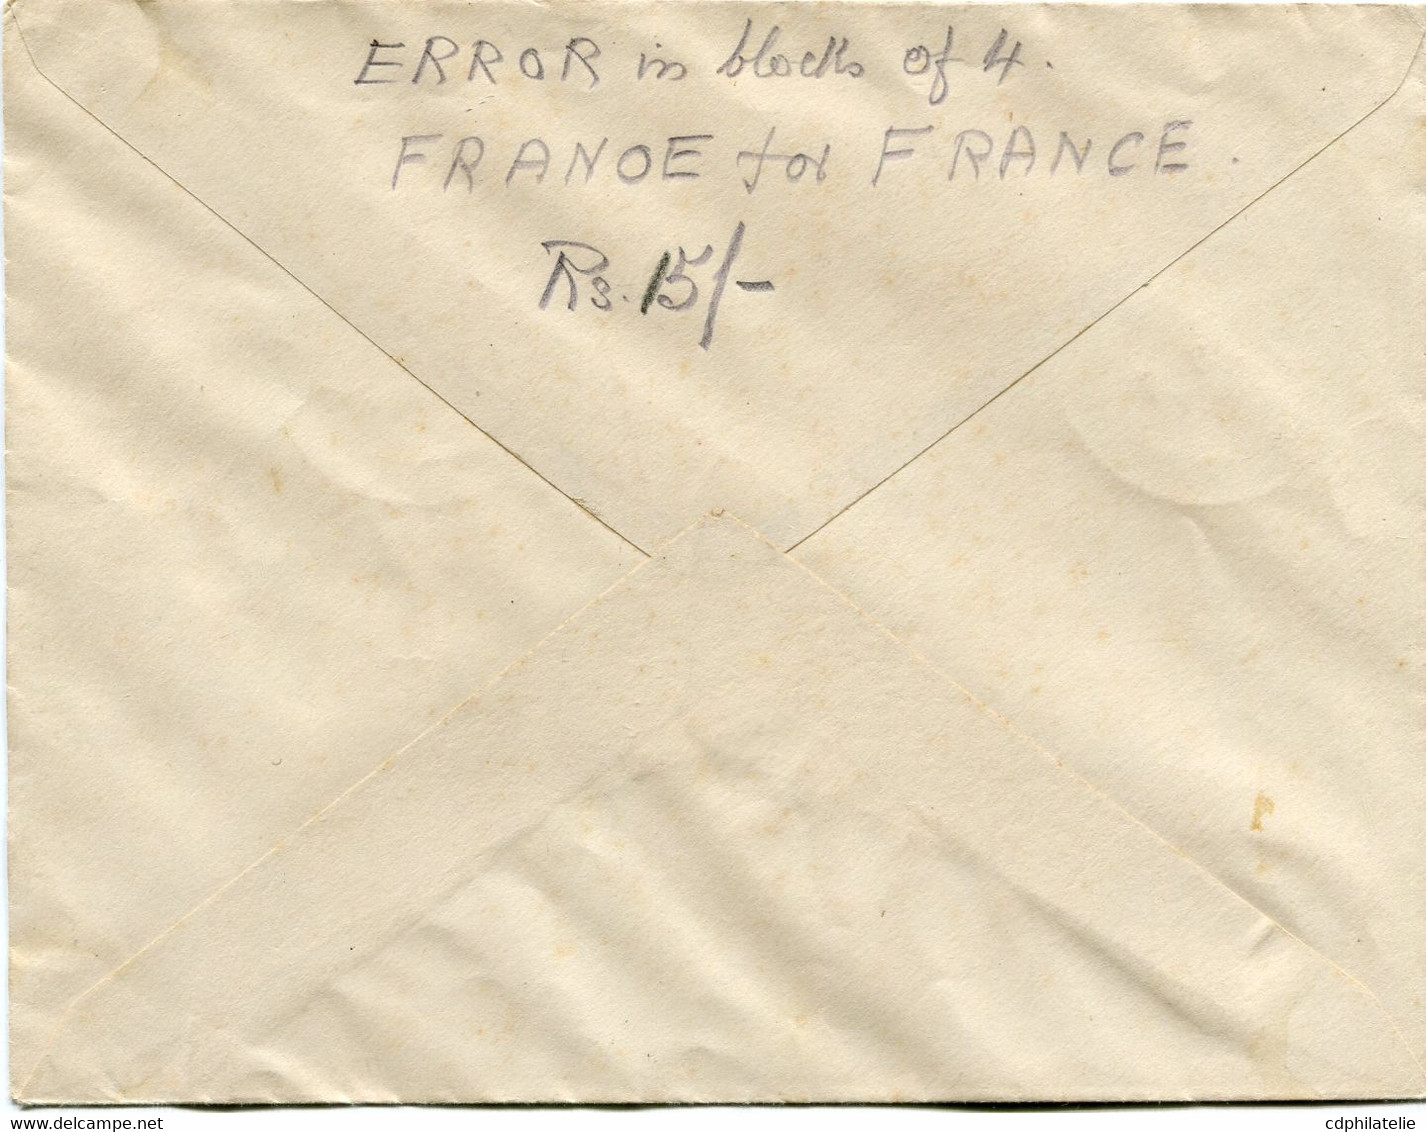 INDE FRANCAISE FRANCE LIBRE LETTRE AFFRANCHIE AVEC UN BLOC DE 4 AVEC VARIETE "FRANOE" DEPART INDE...5-8-1944 PONDICHERY - Briefe U. Dokumente